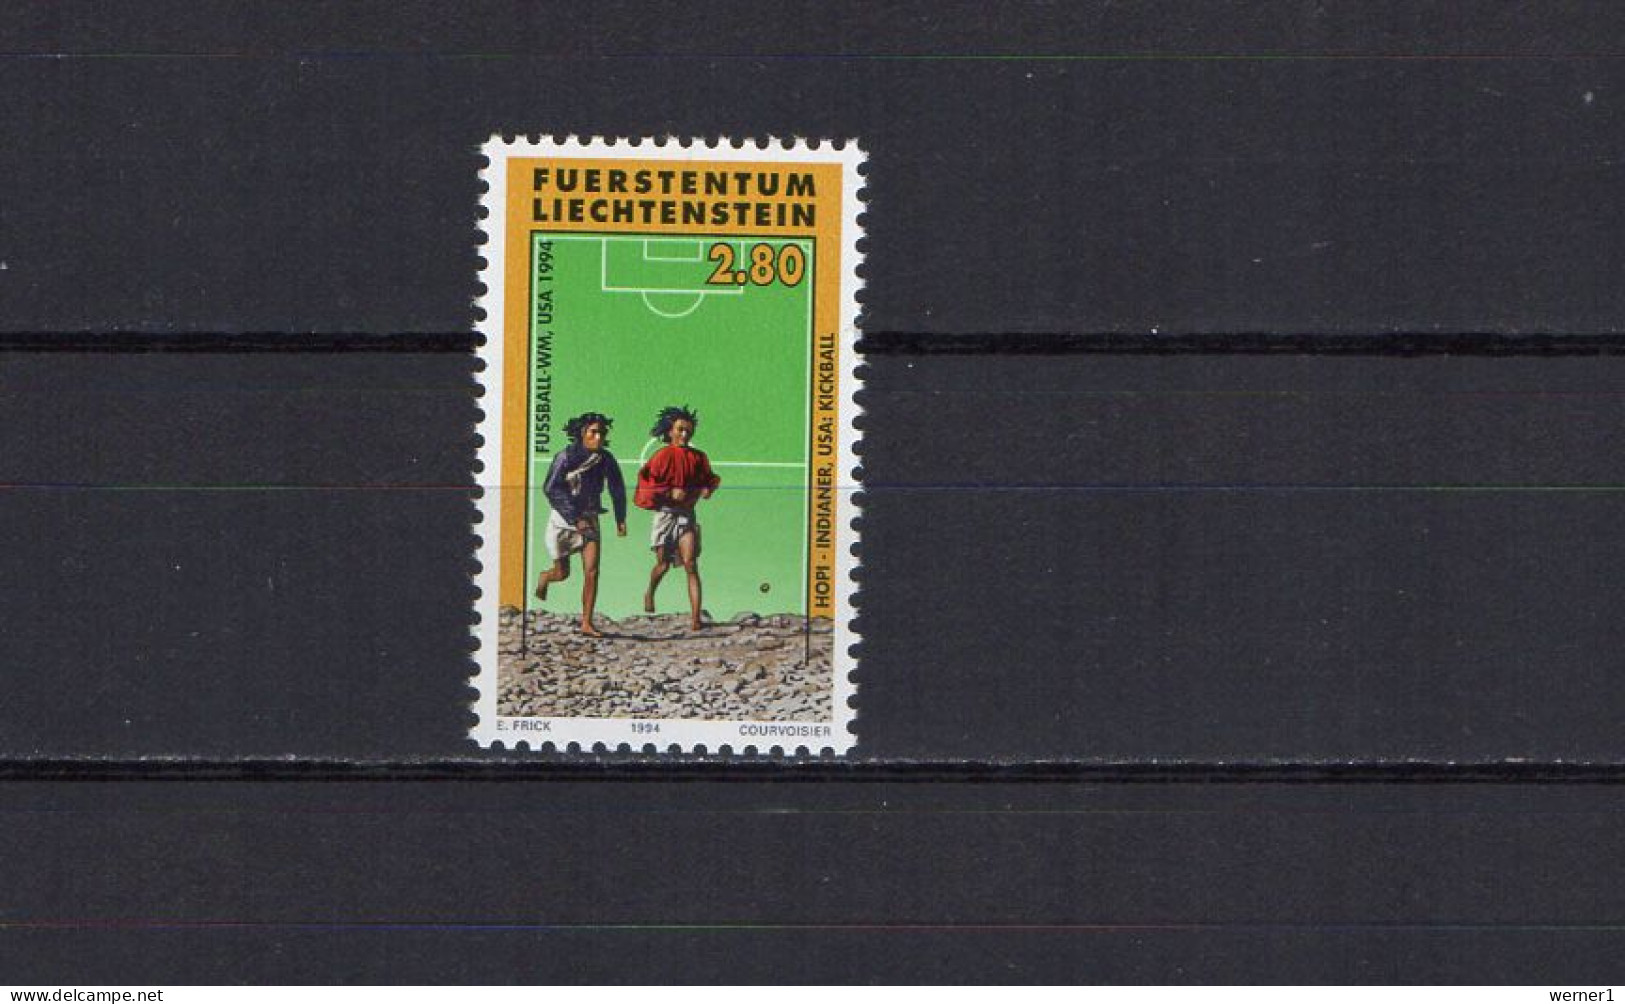 Liechtenstein 1994 Football Soccer World Cup Stamp MNH - 1994 – Stati Uniti